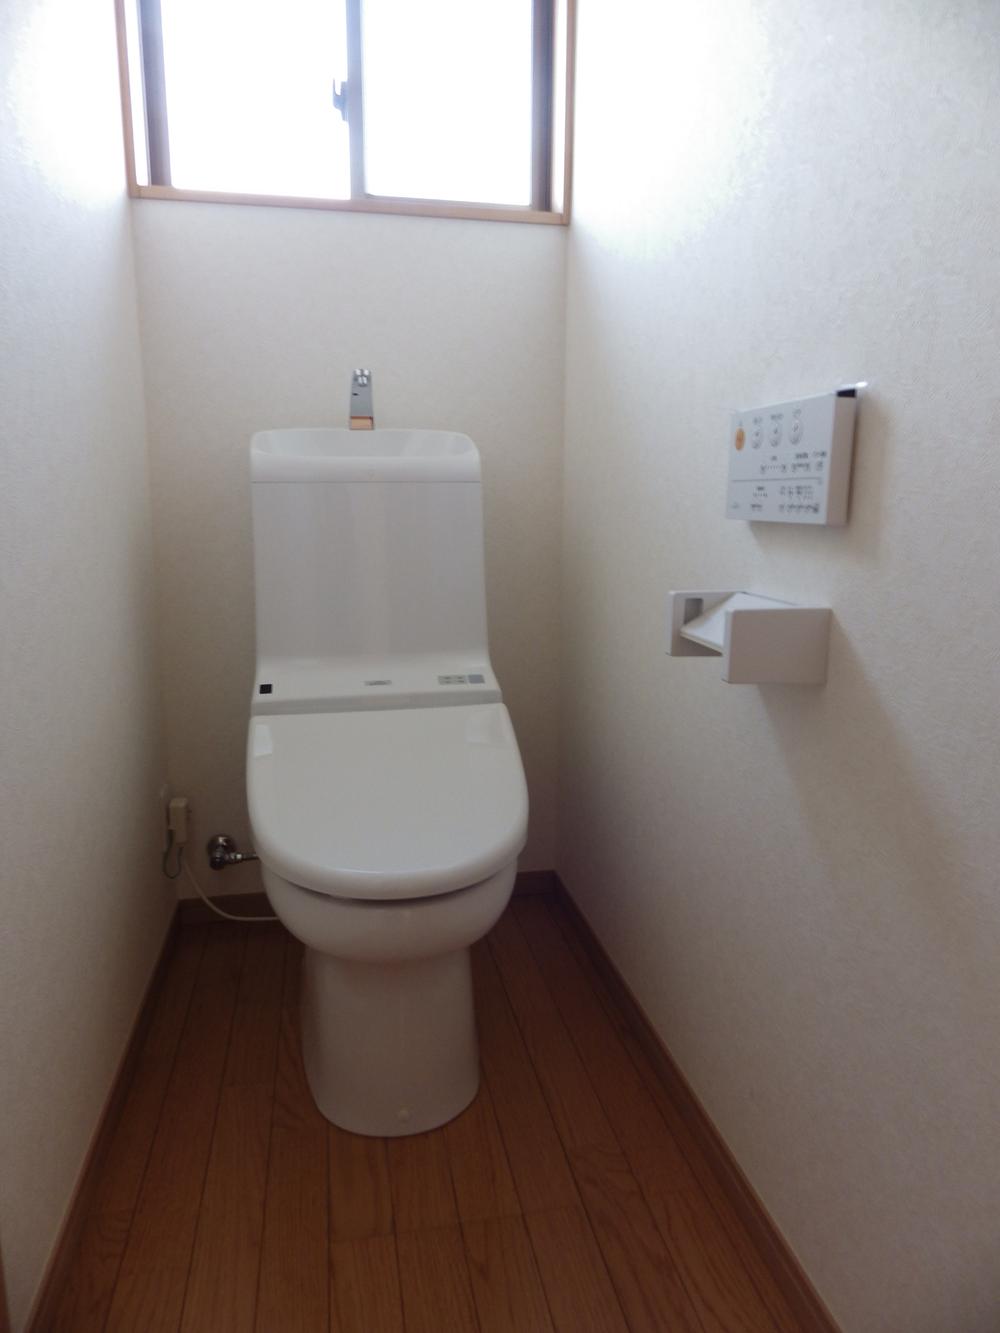 Toilet. Toilet with washing toilet seat